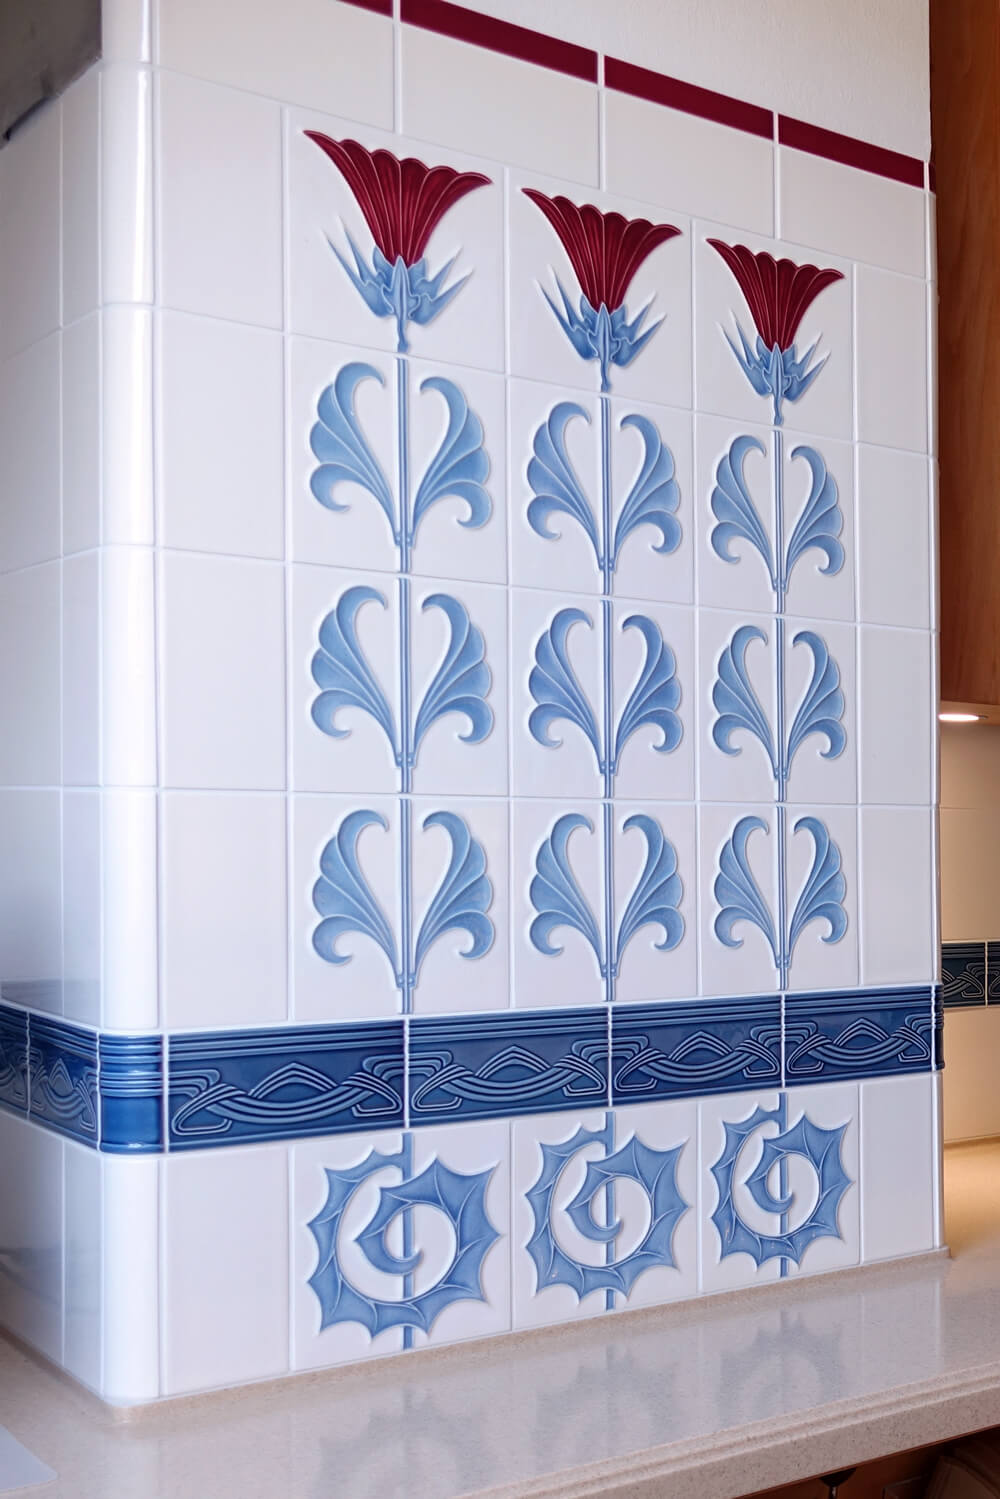 Küche mit Jugendstilfliese und Jugendstilbordüre von GOLEM. Florales Ornament in rot, weiß und blau. Entwurf: Tonwerke Offstein 1900